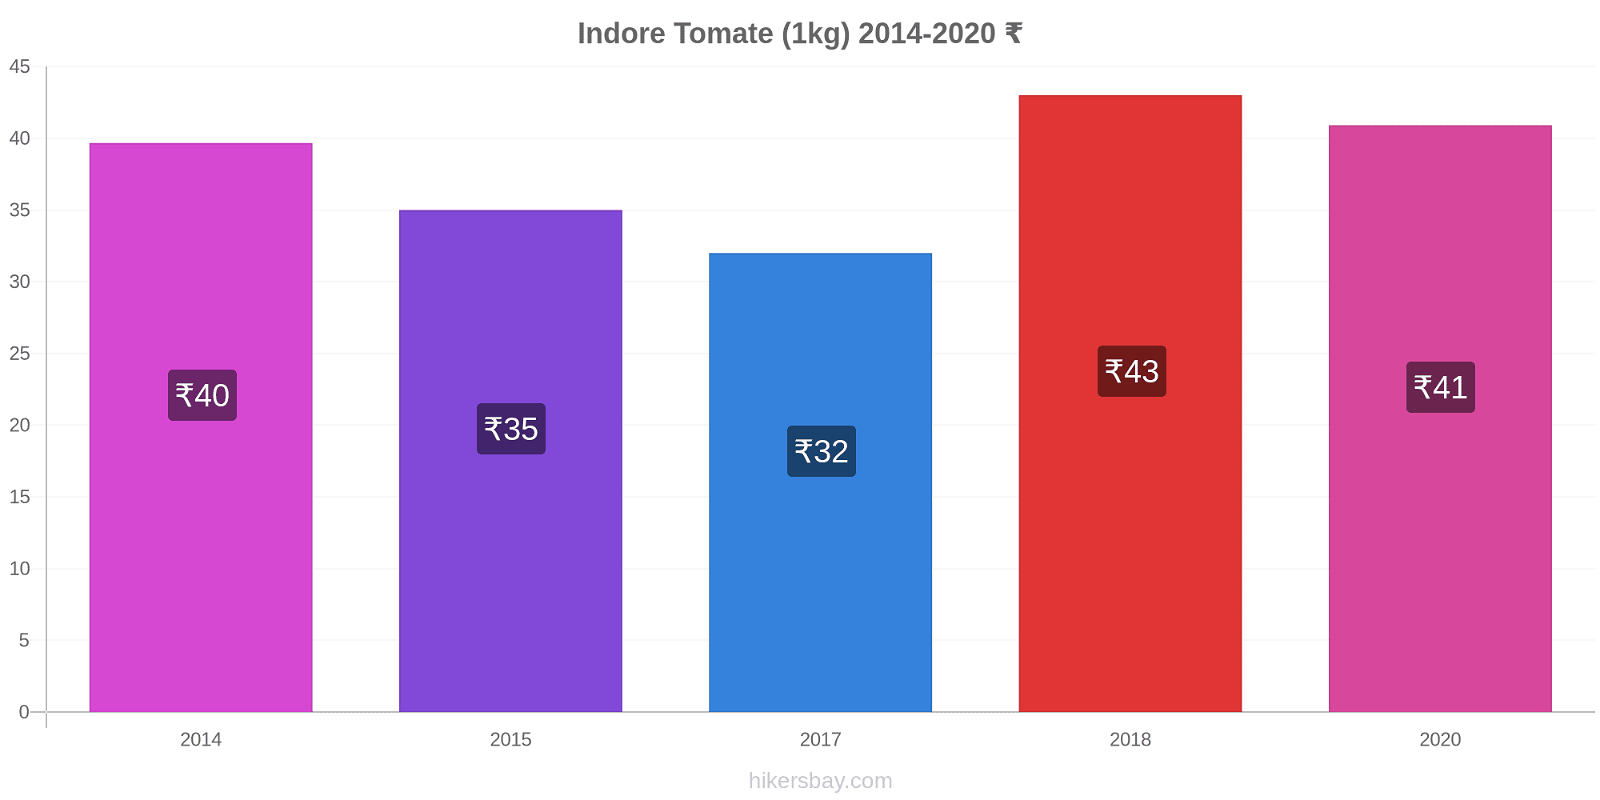 Indore variação de preço Tomate (1kg) hikersbay.com